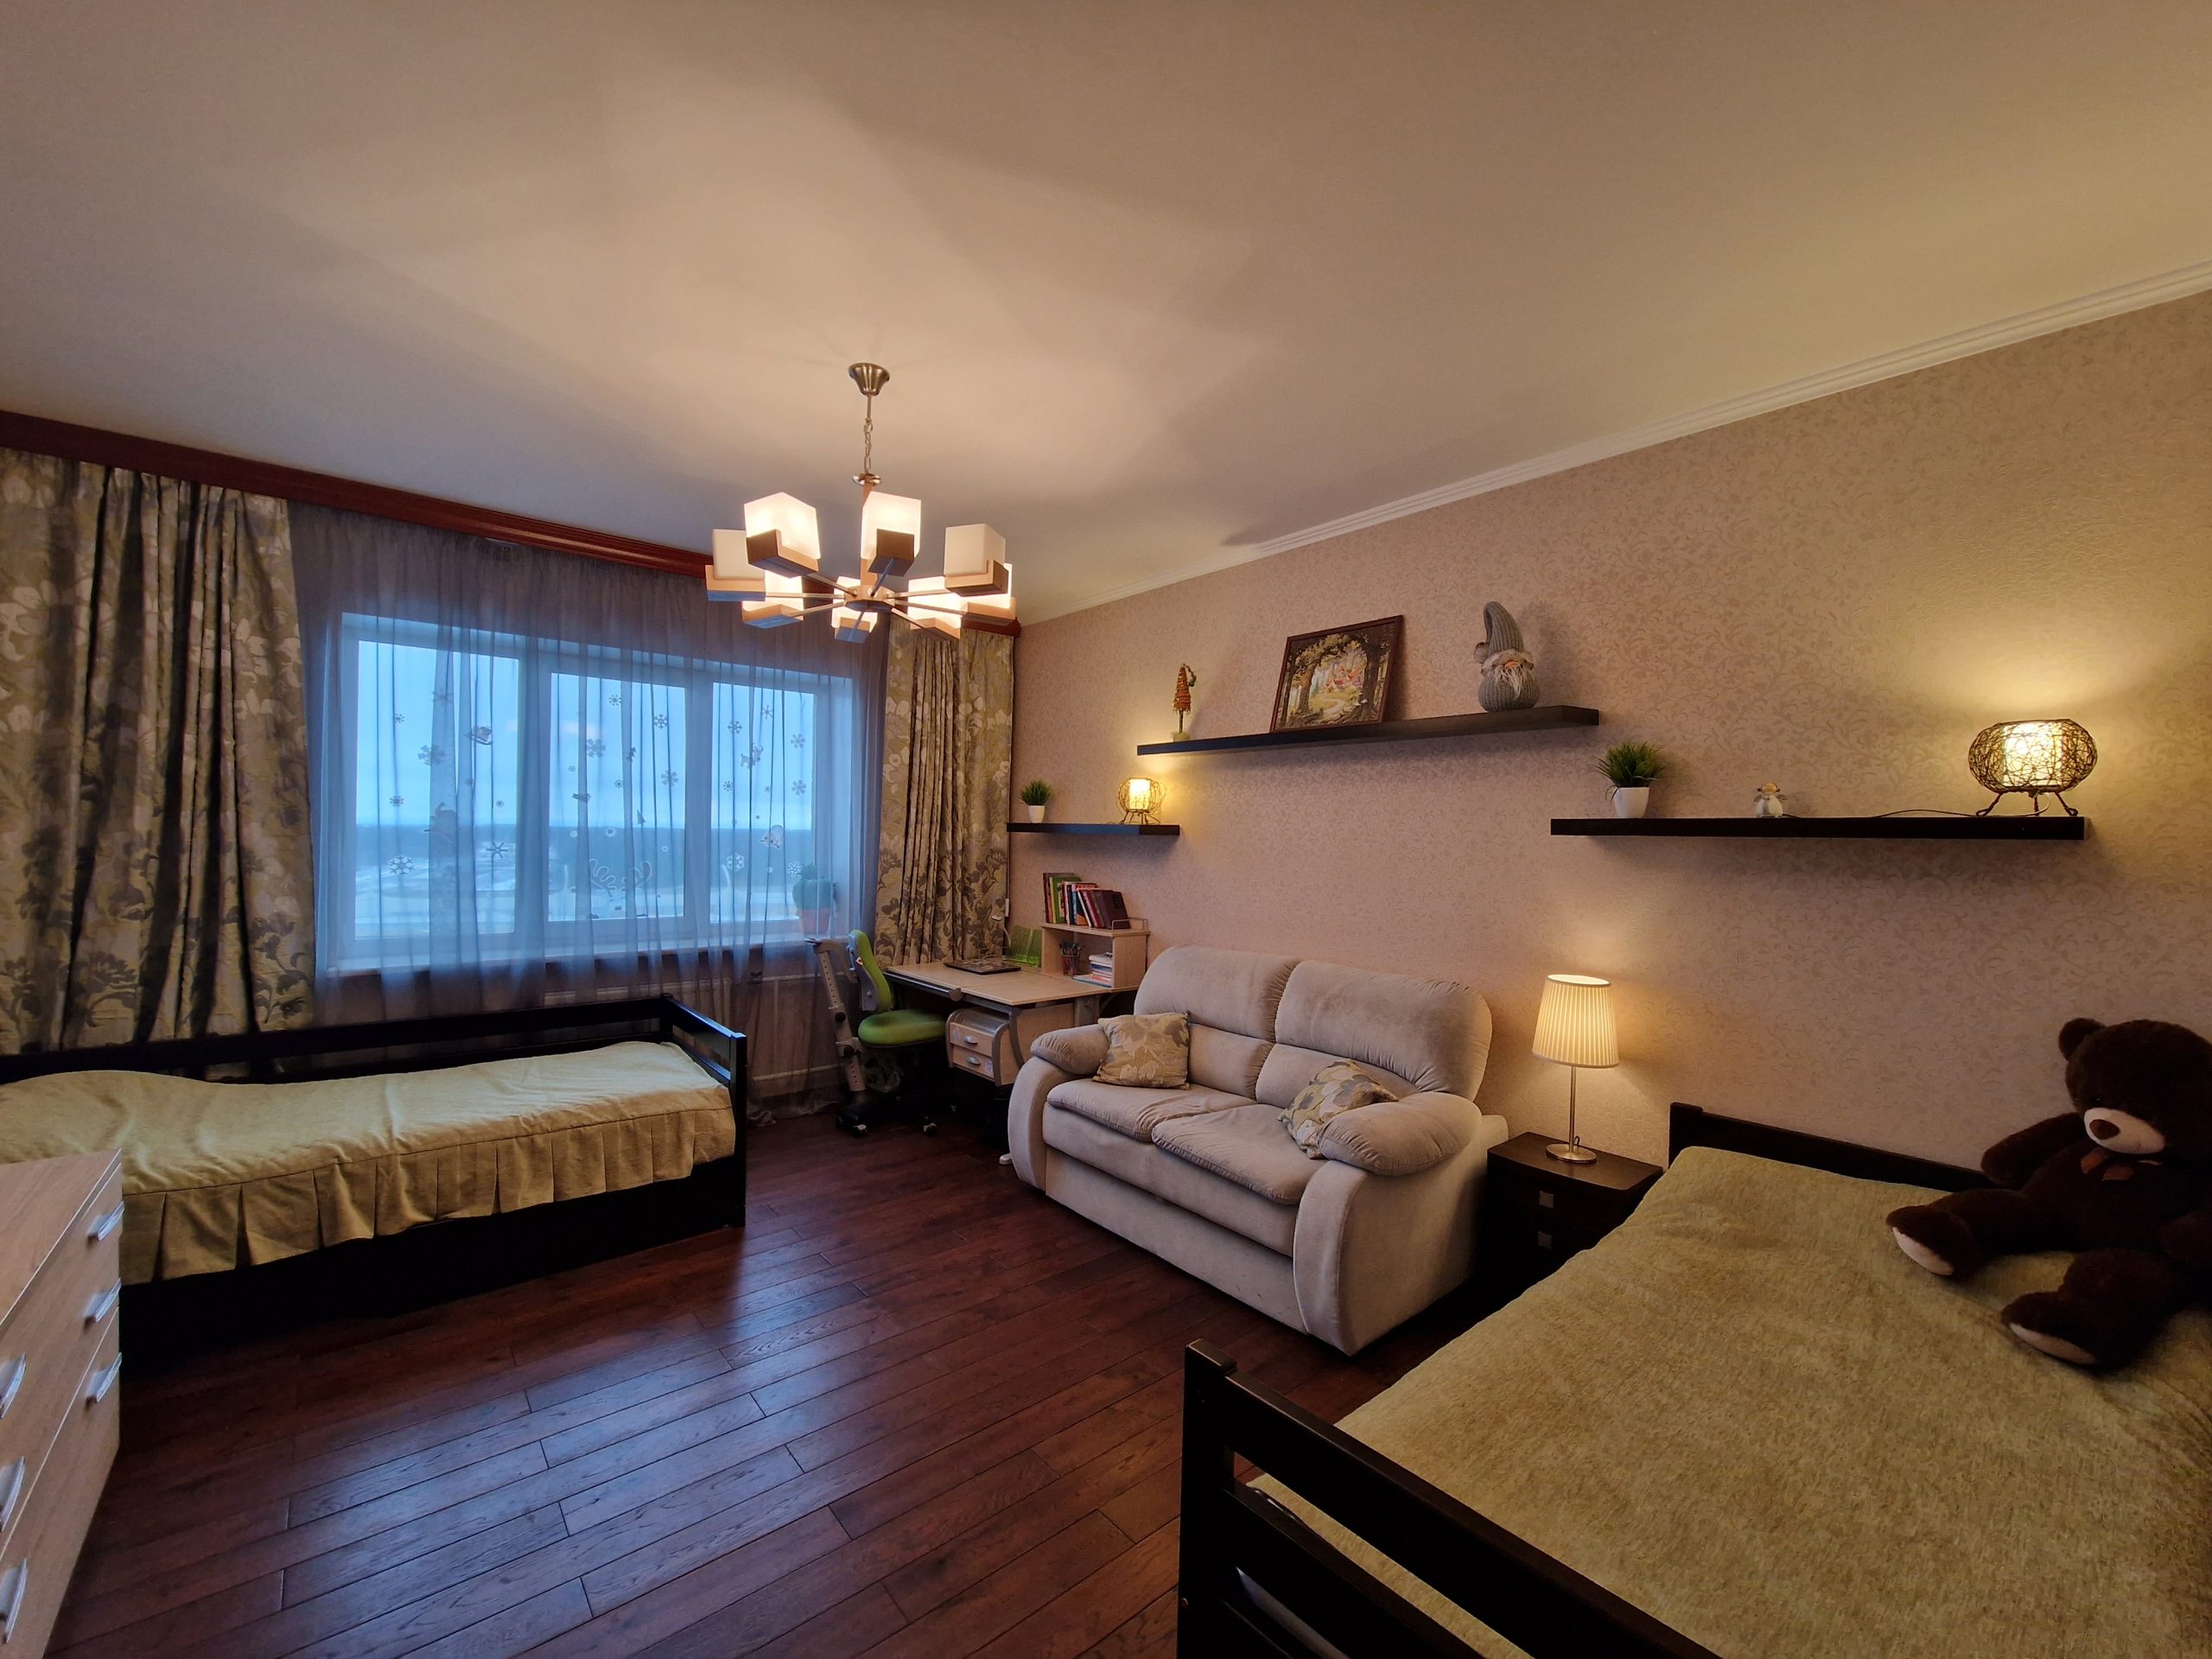 Продается 2-х комнатная квартира 65,6м2 на 8 этаже в ЖК Юнтоловская перспектива, Планерная 63, к. 1.